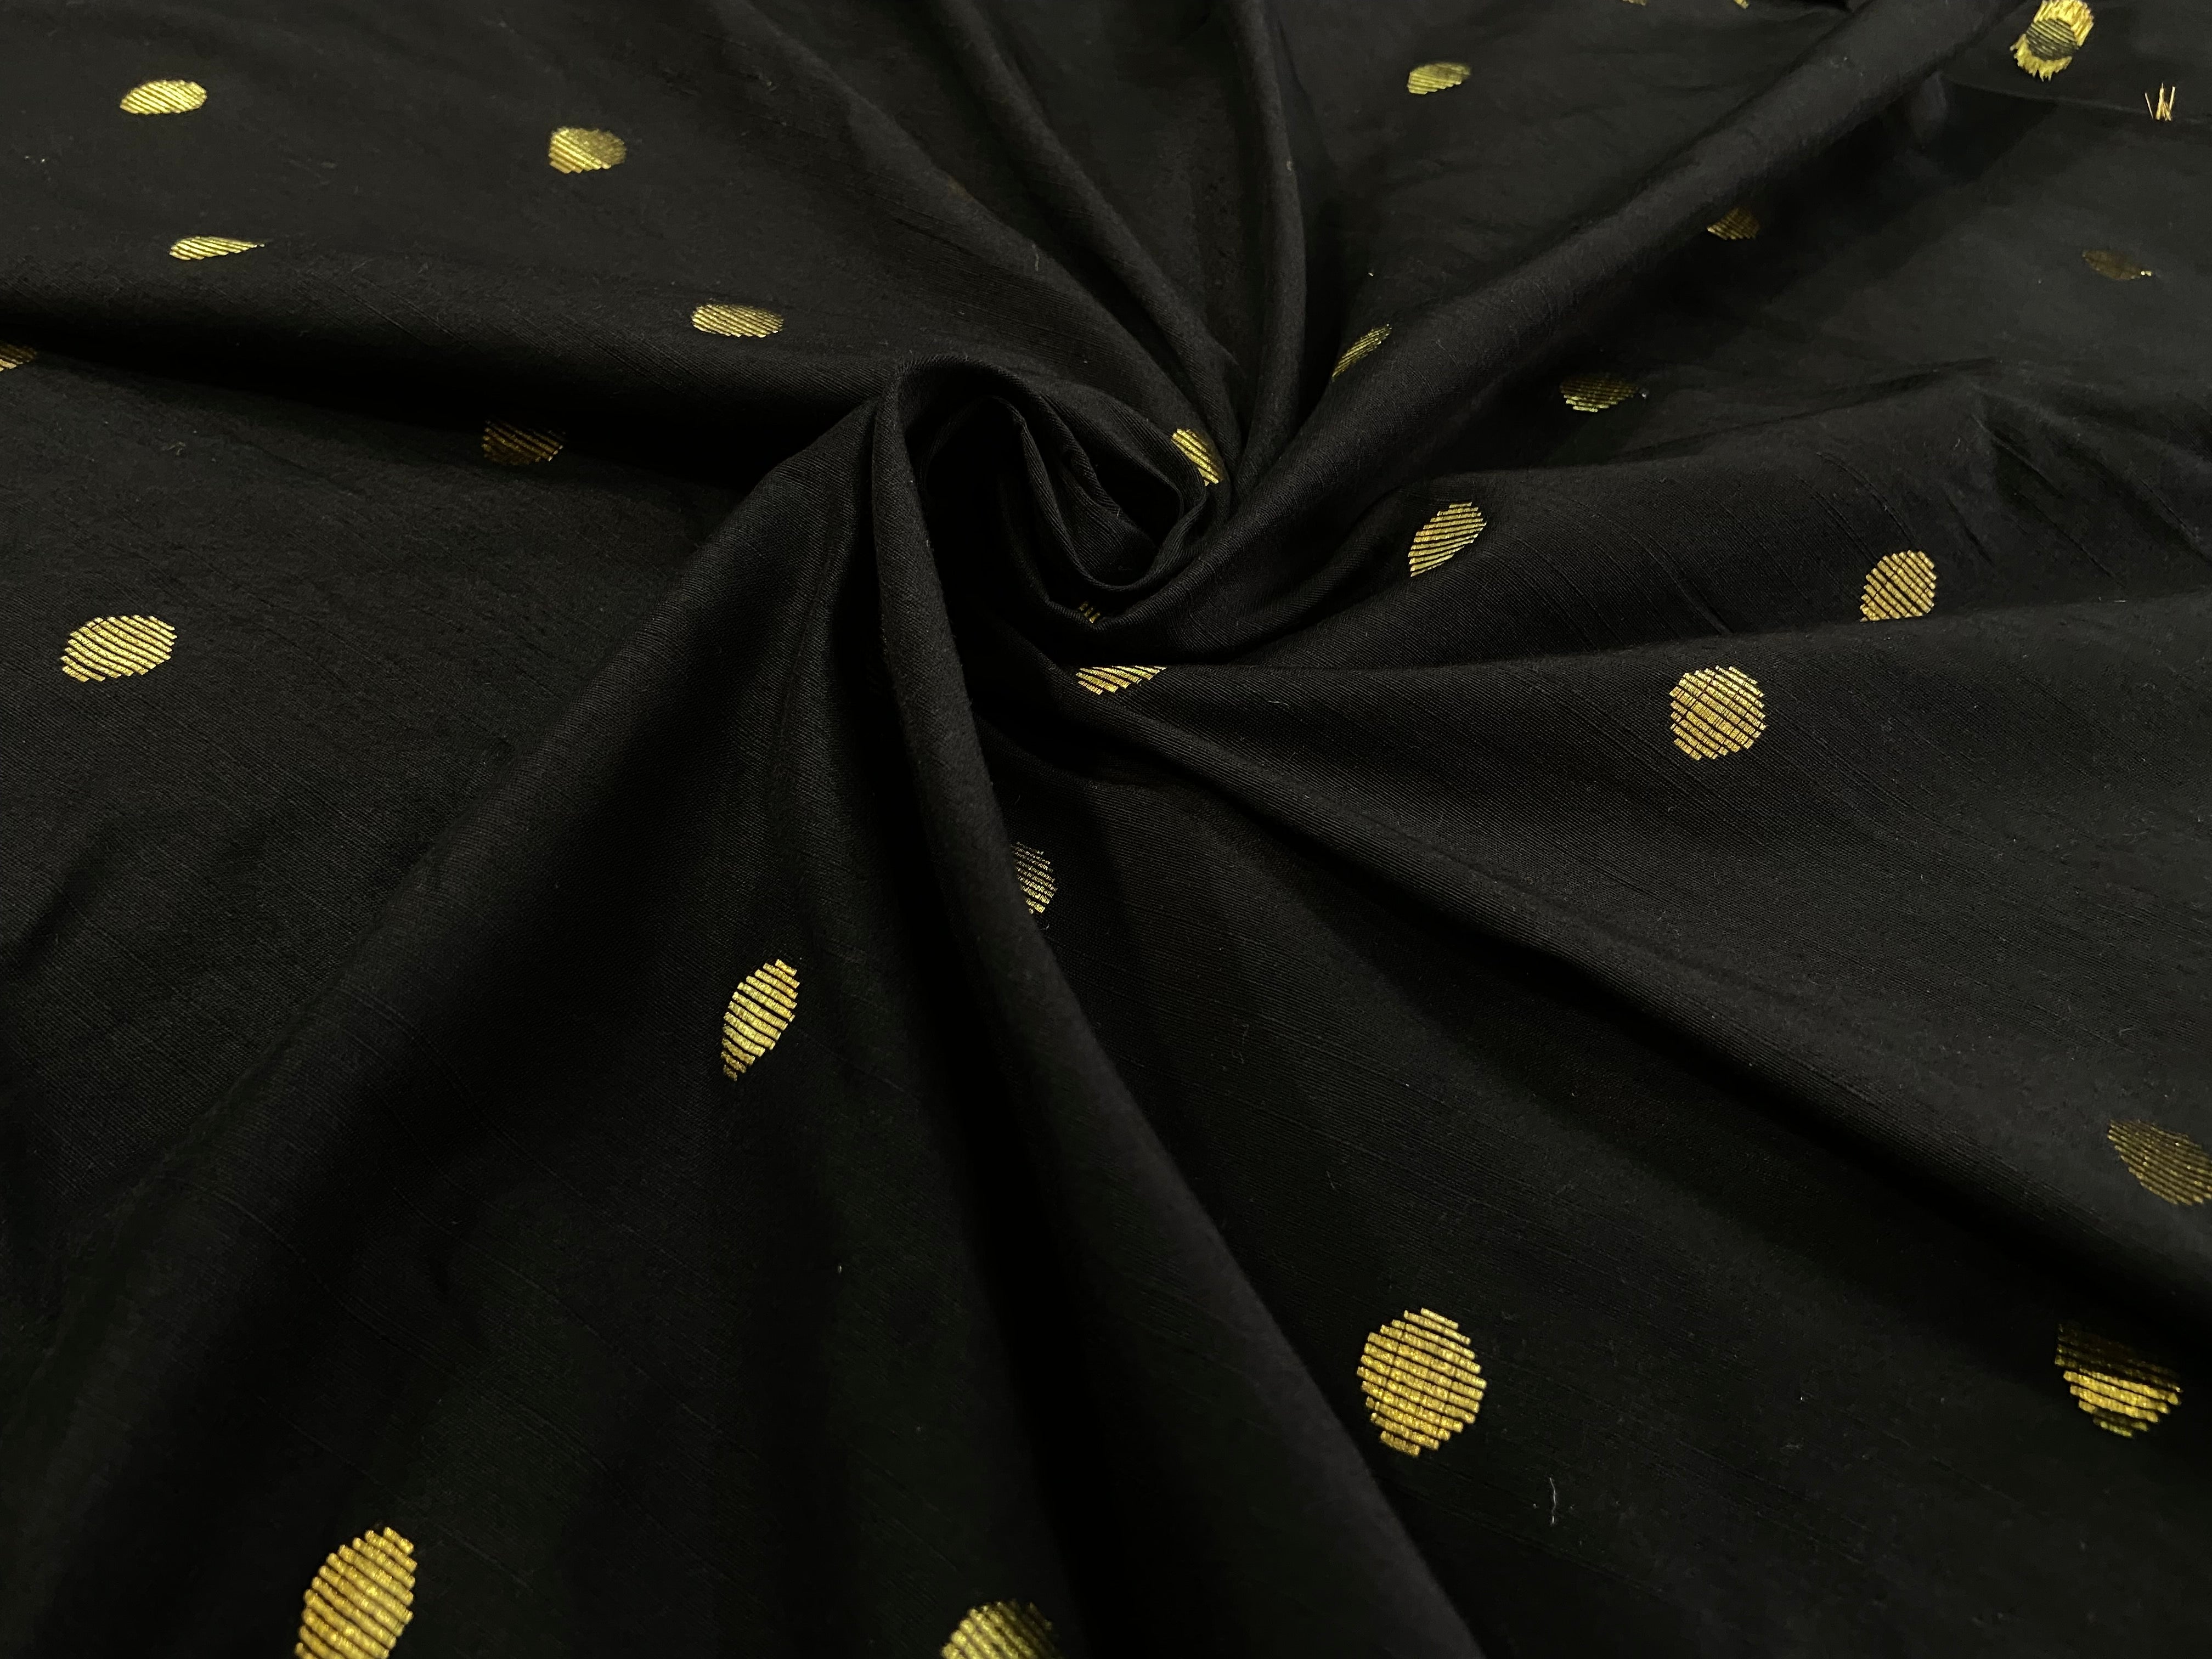 Fabric #036